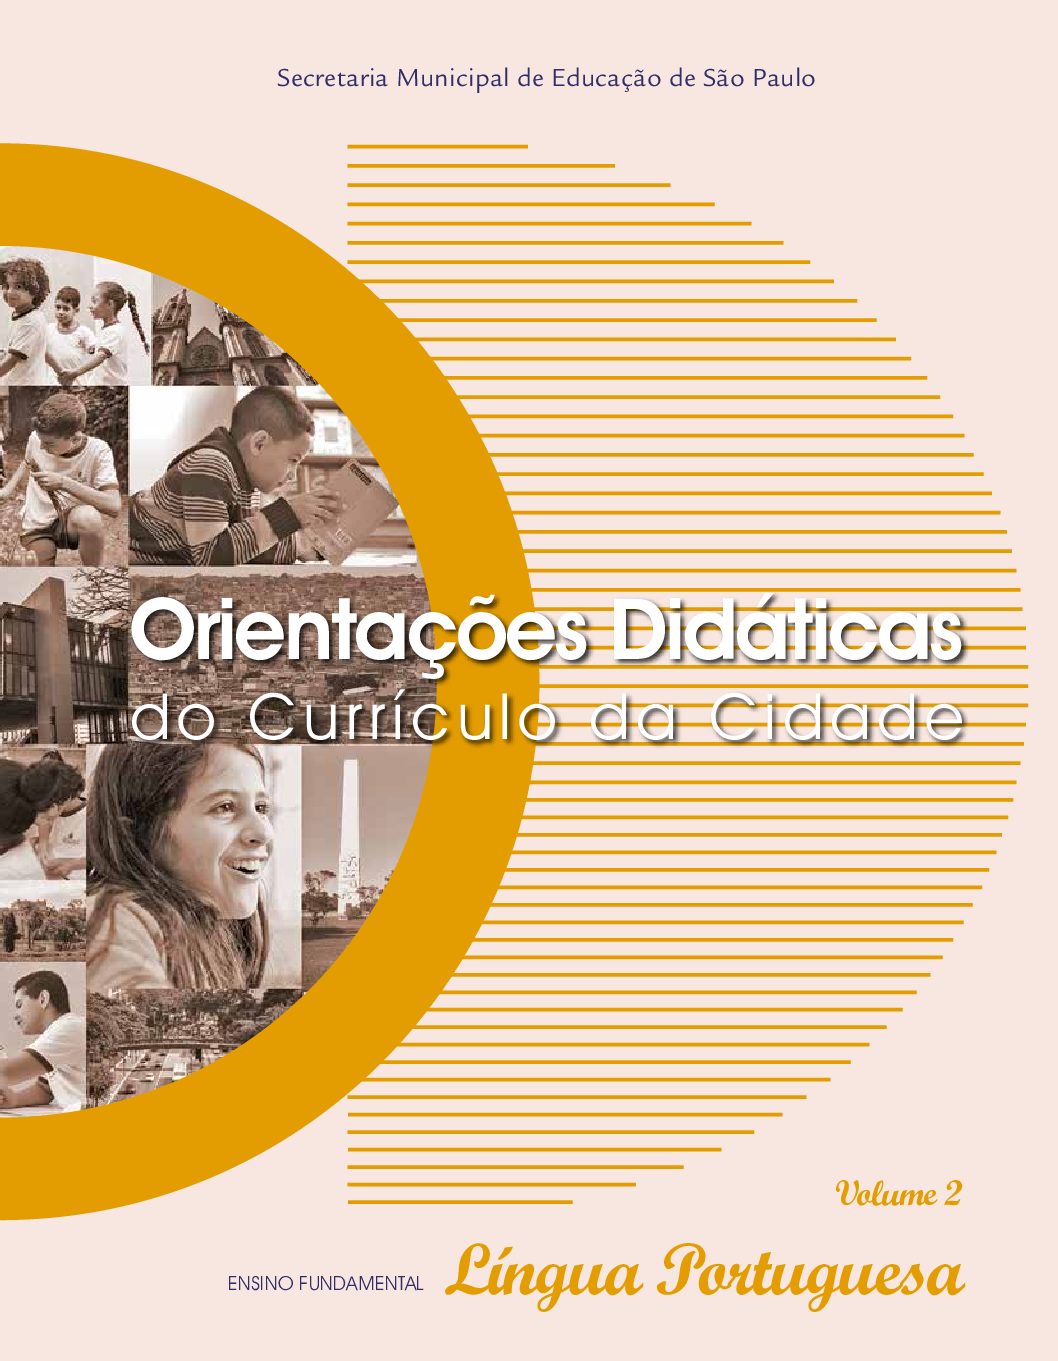 Orientações didáticas para o componente curricular Língua Portuguesa no Ensino Fundamental - volume 2.